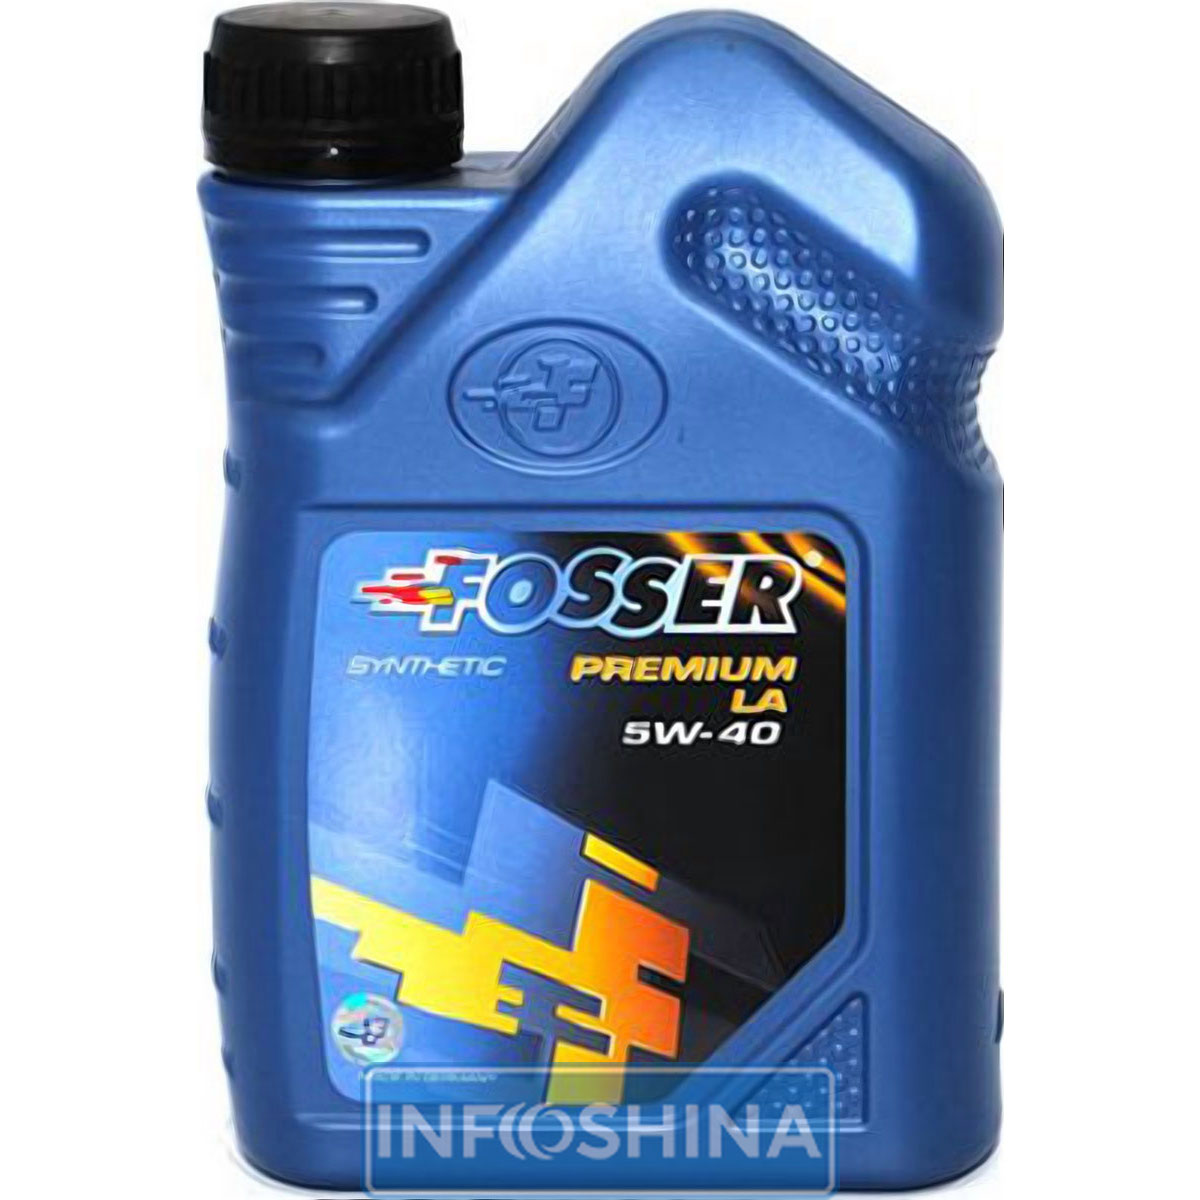 Fosser Premium LA 5W-40